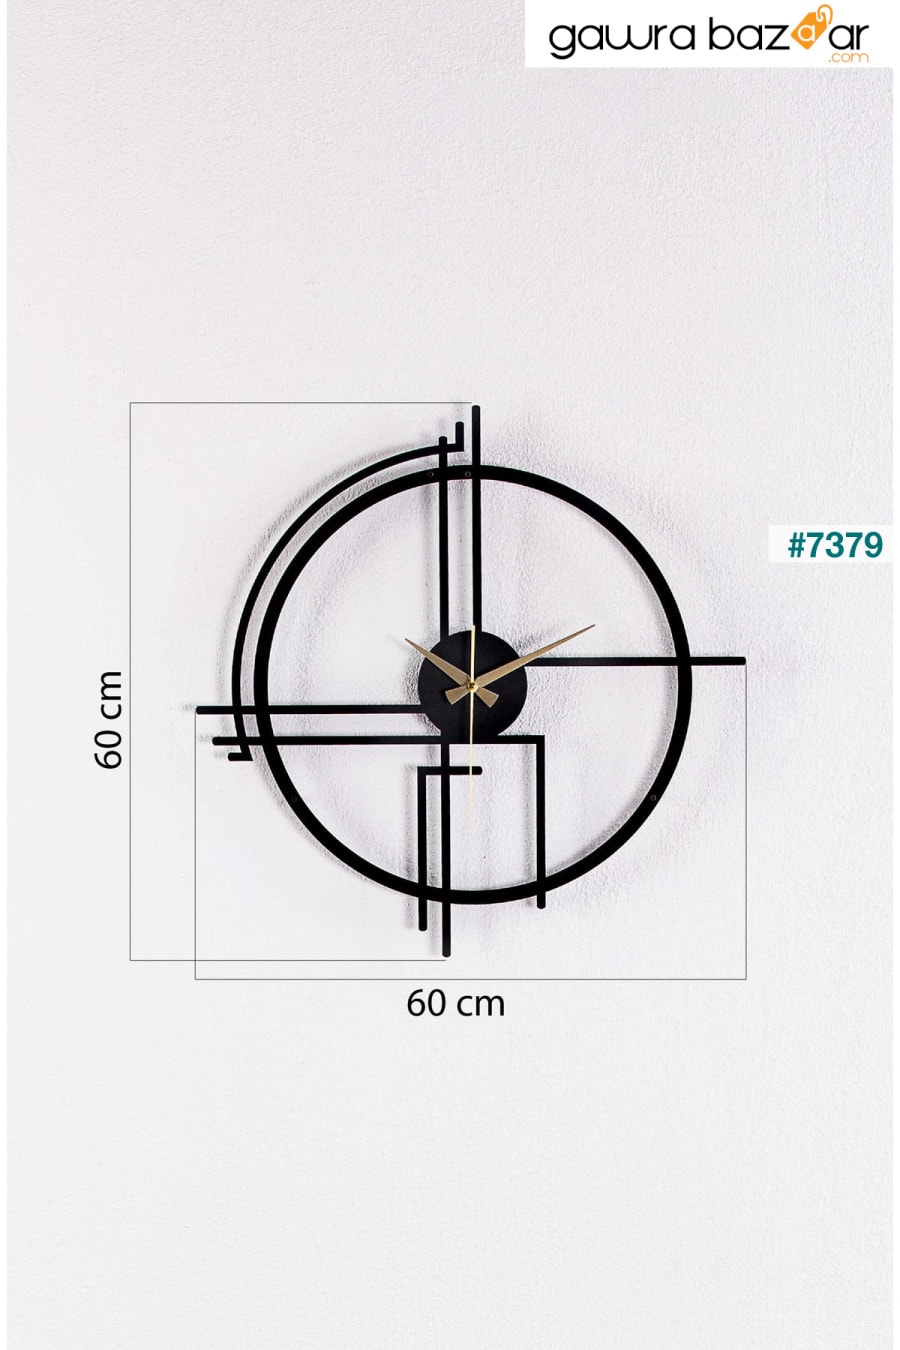 ساعة حائط معدنية سوداء من Querencia سمك 1.5 ملم 60x60 سم Gowpenart 2